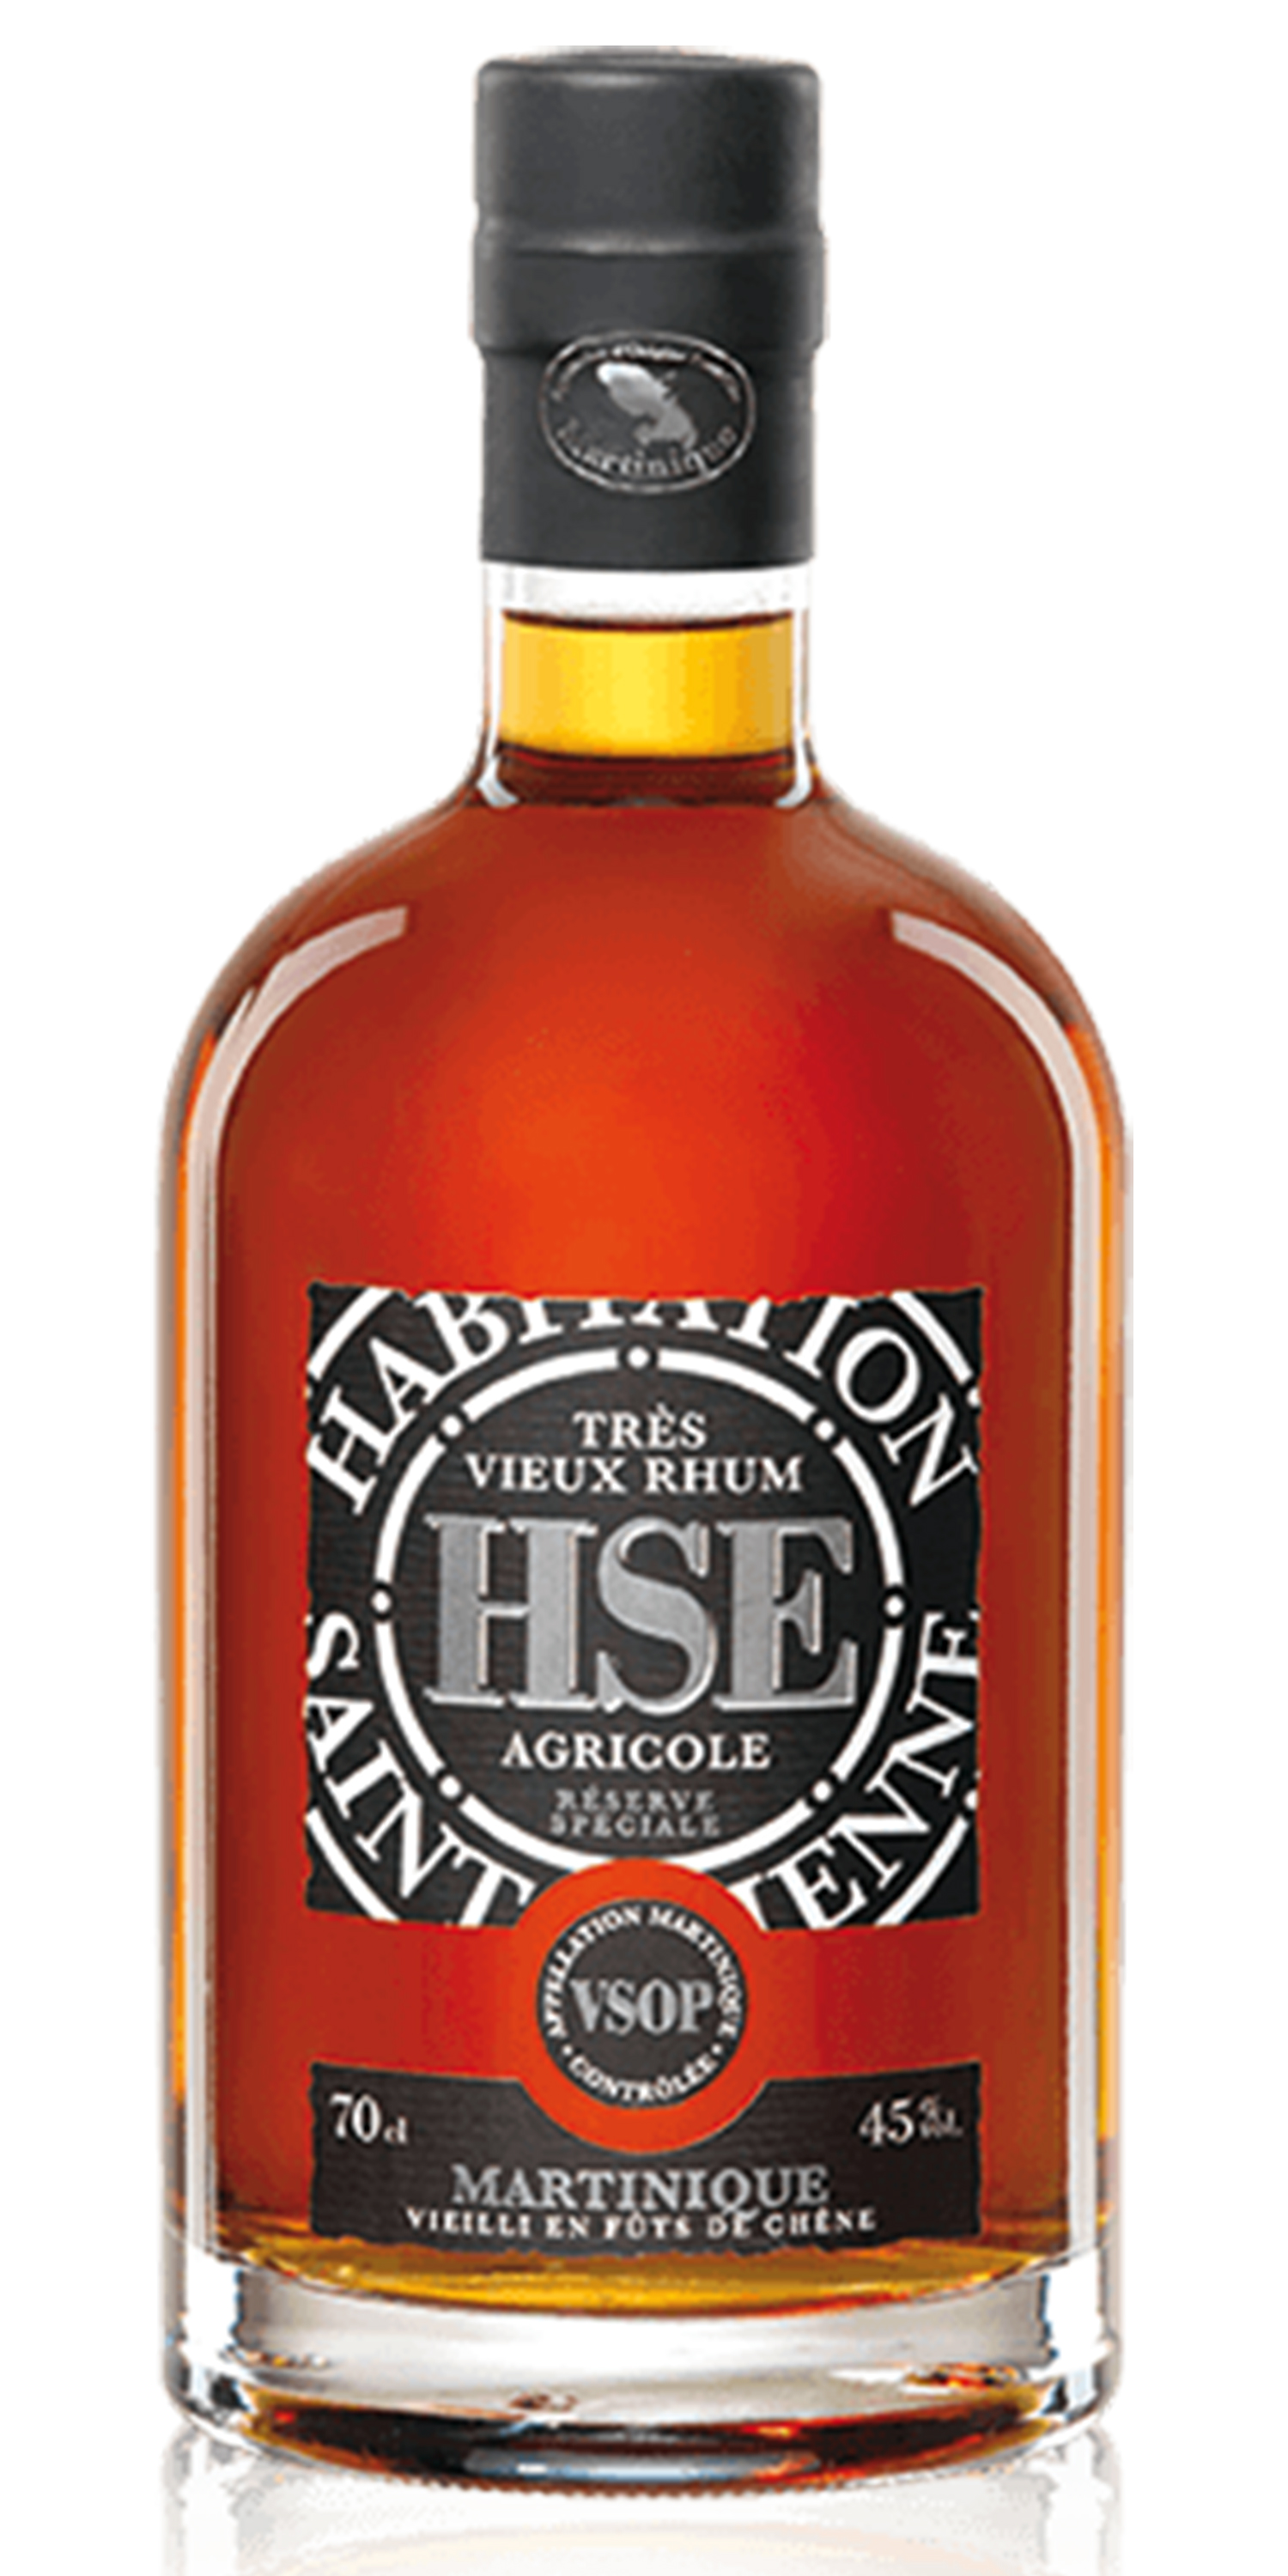 Alcool HSE Vieux Rhum Agricole VSOP *